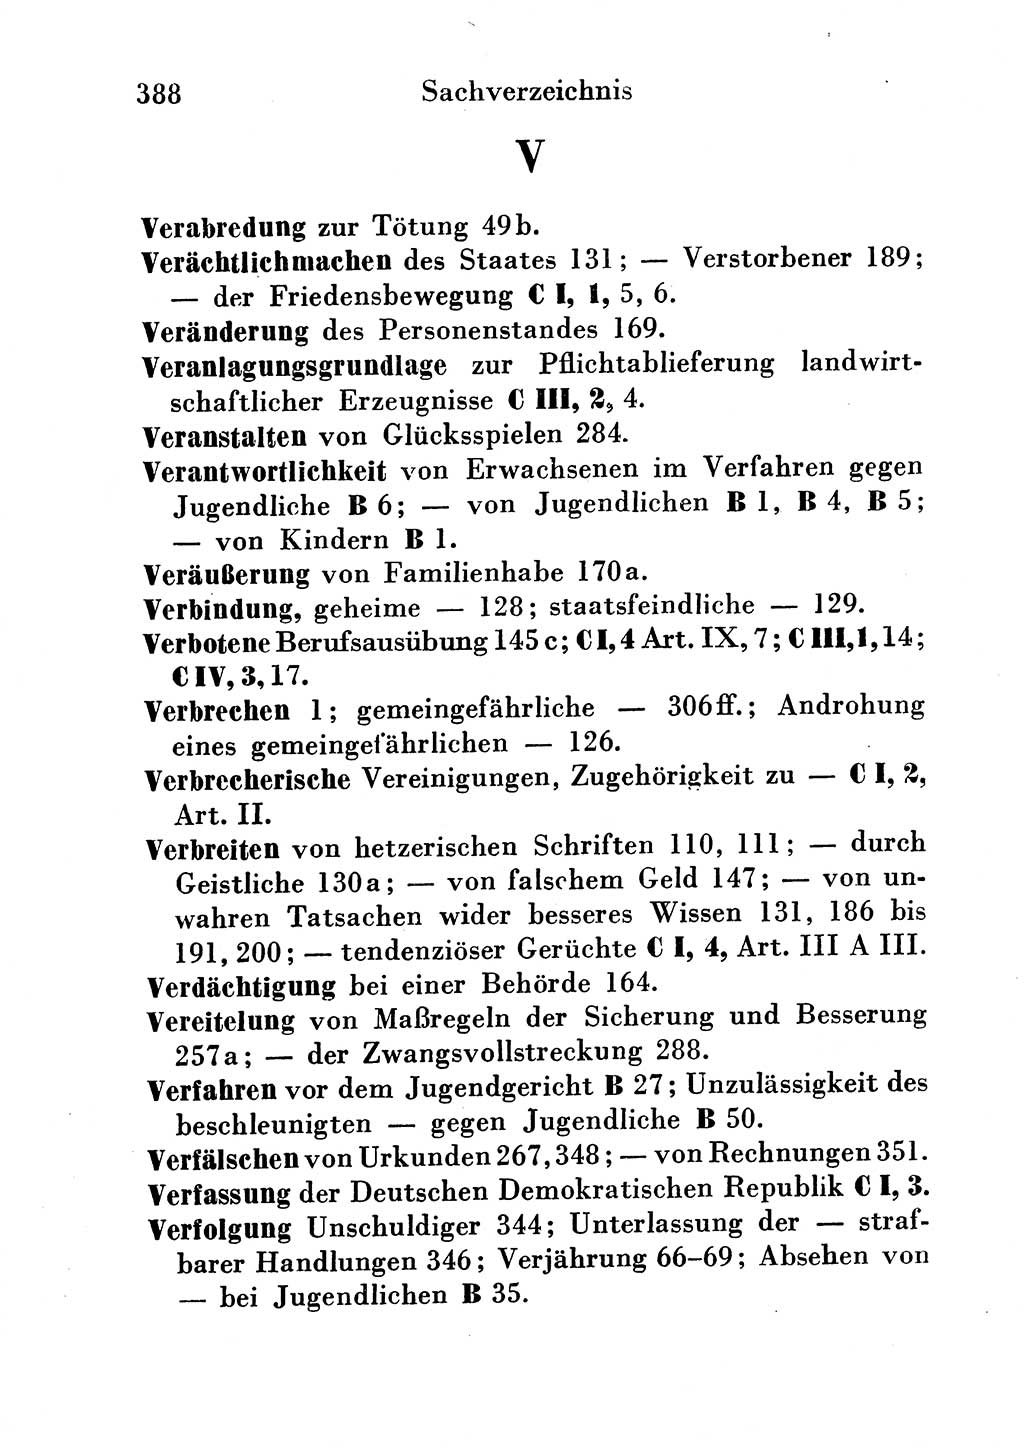 Strafgesetzbuch (StGB) und andere Strafgesetze [Deutsche Demokratische Republik (DDR)] 1954, Seite 388 (StGB Strafges. DDR 1954, S. 388)